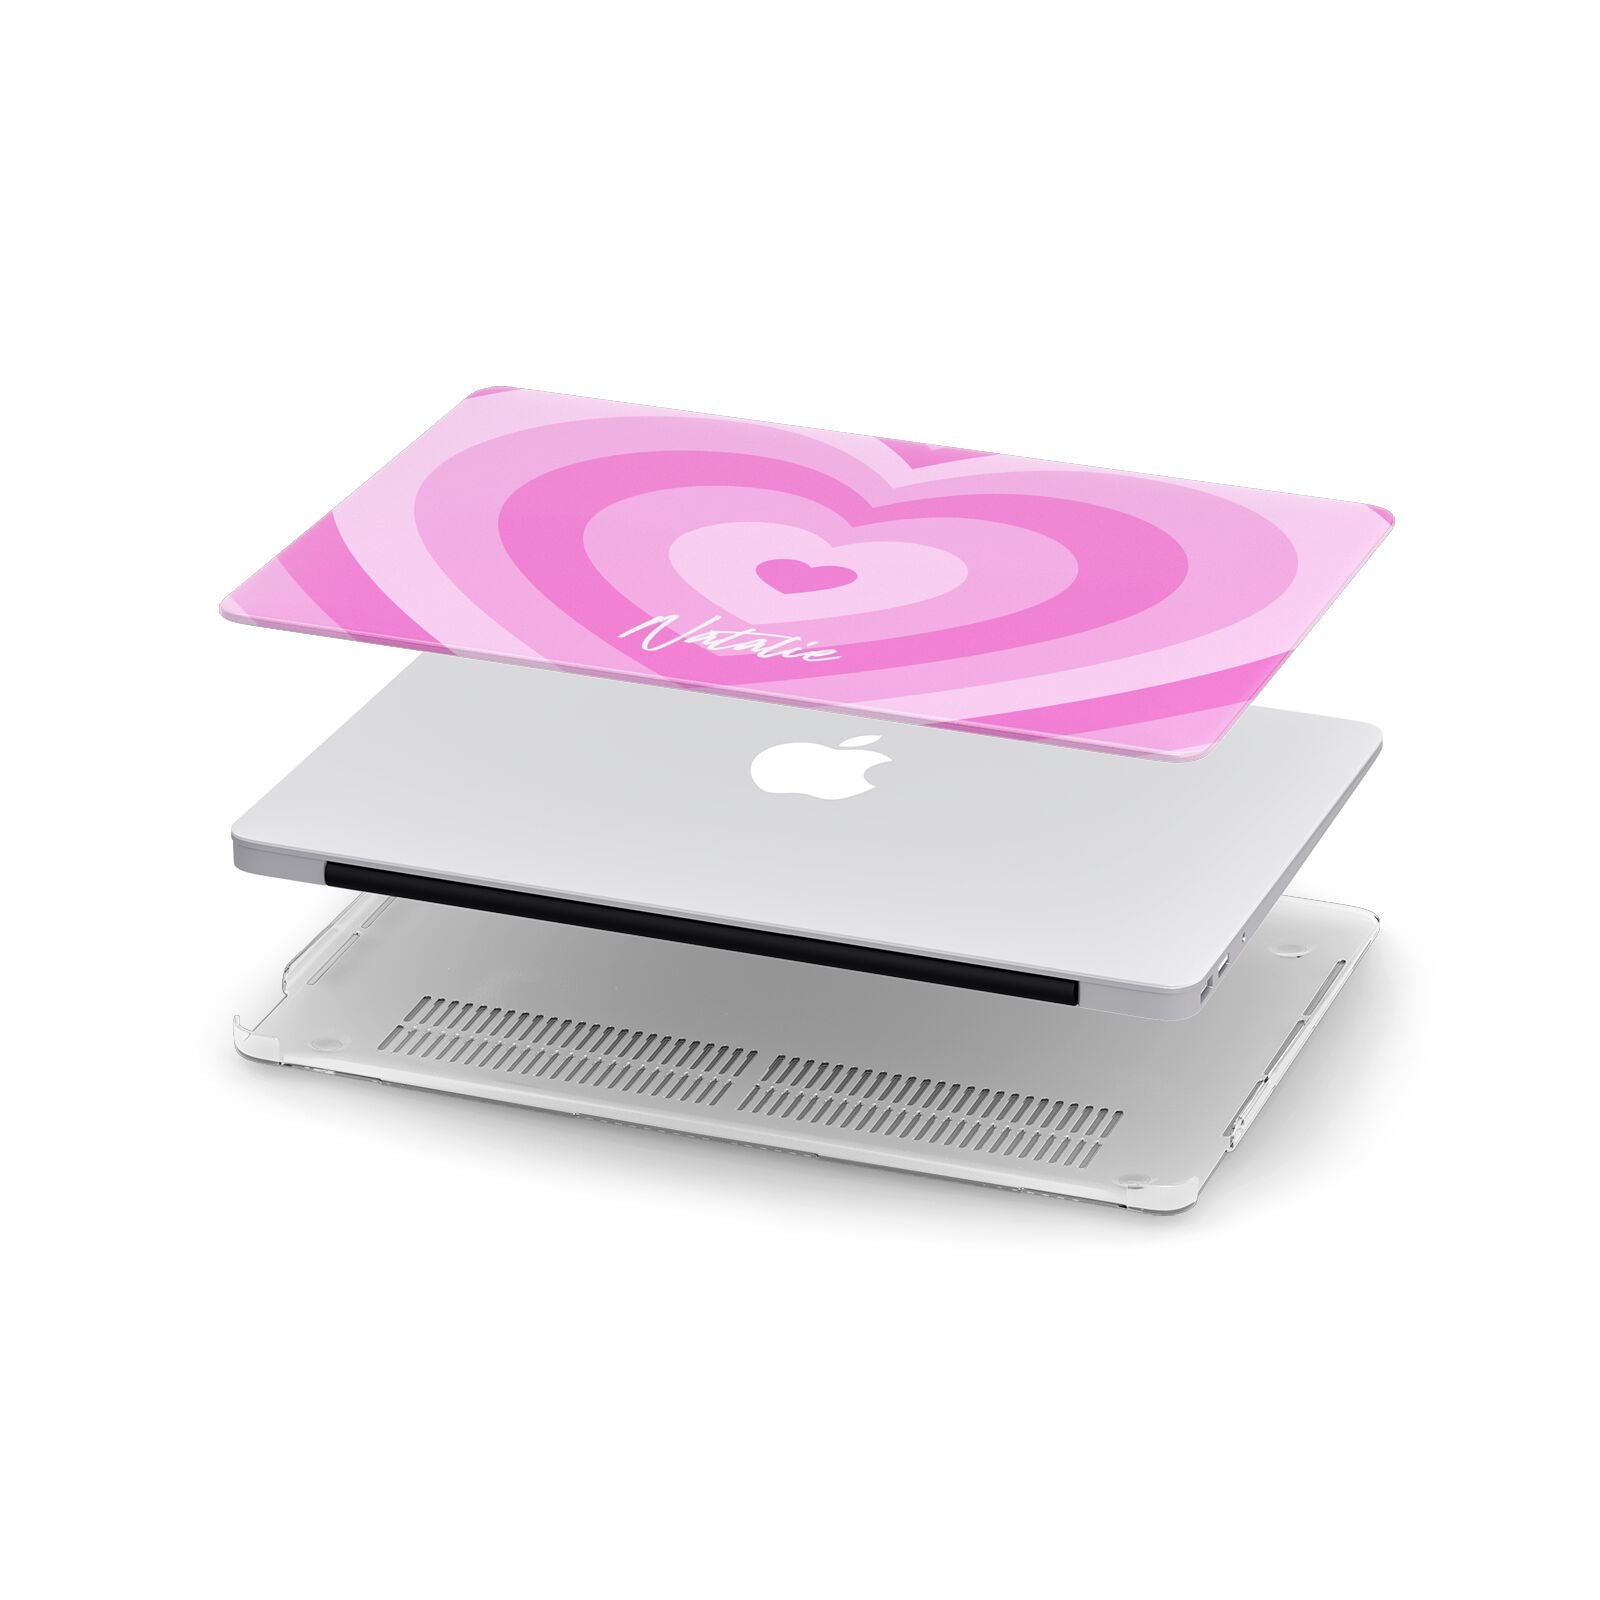 Personalised Pink Heart Apple MacBook Case in Detail